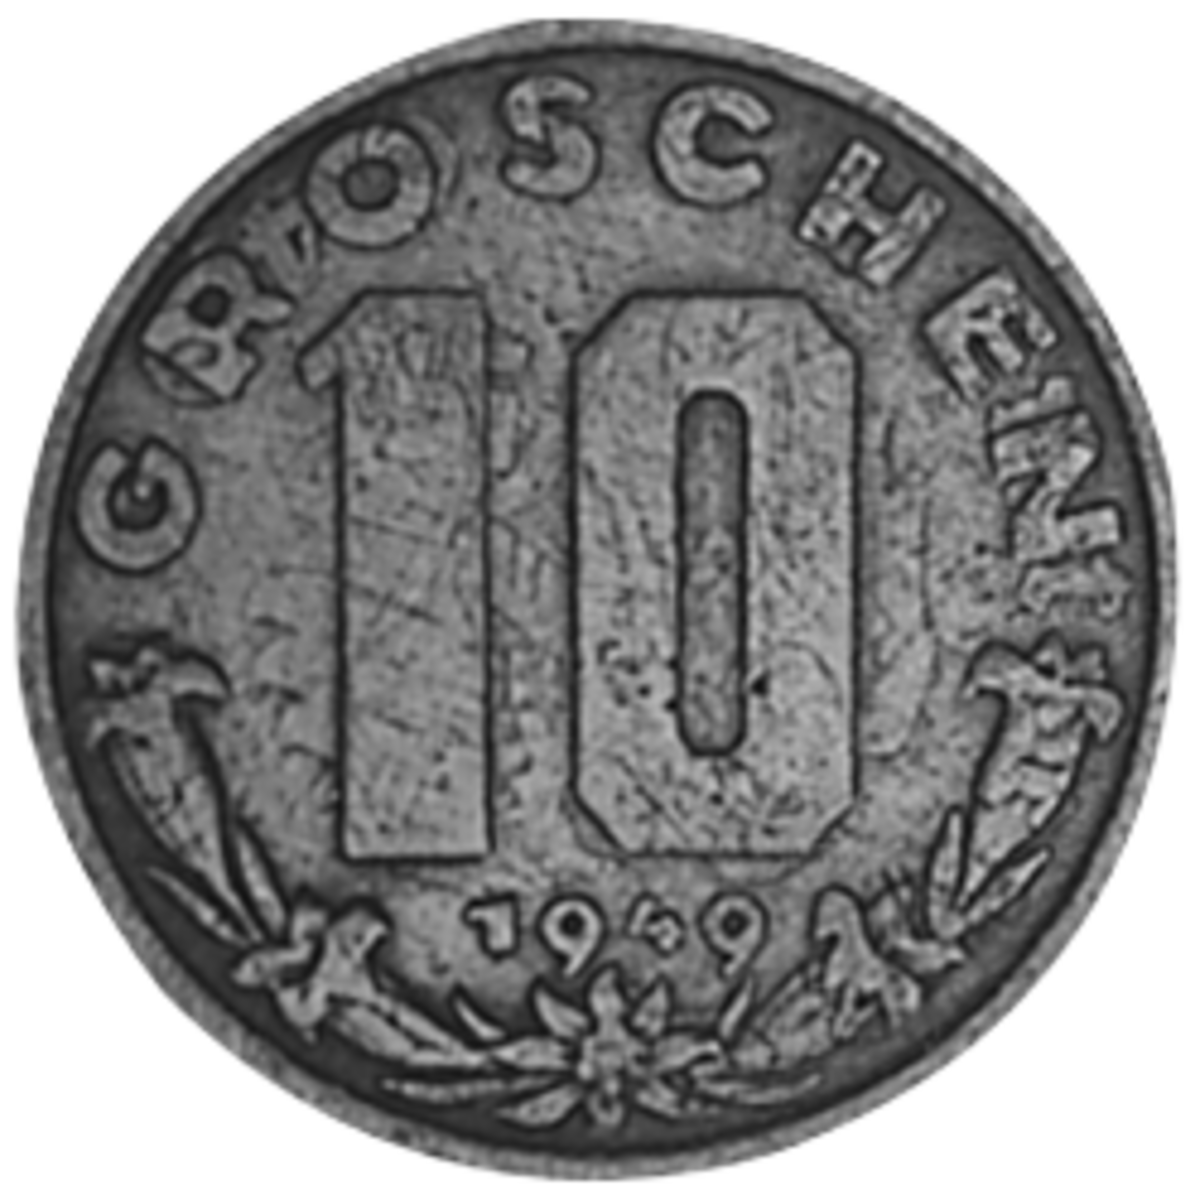 Certain Austrian coins from 1947 to 1949 were struck over Nazi reichspfennig coins.